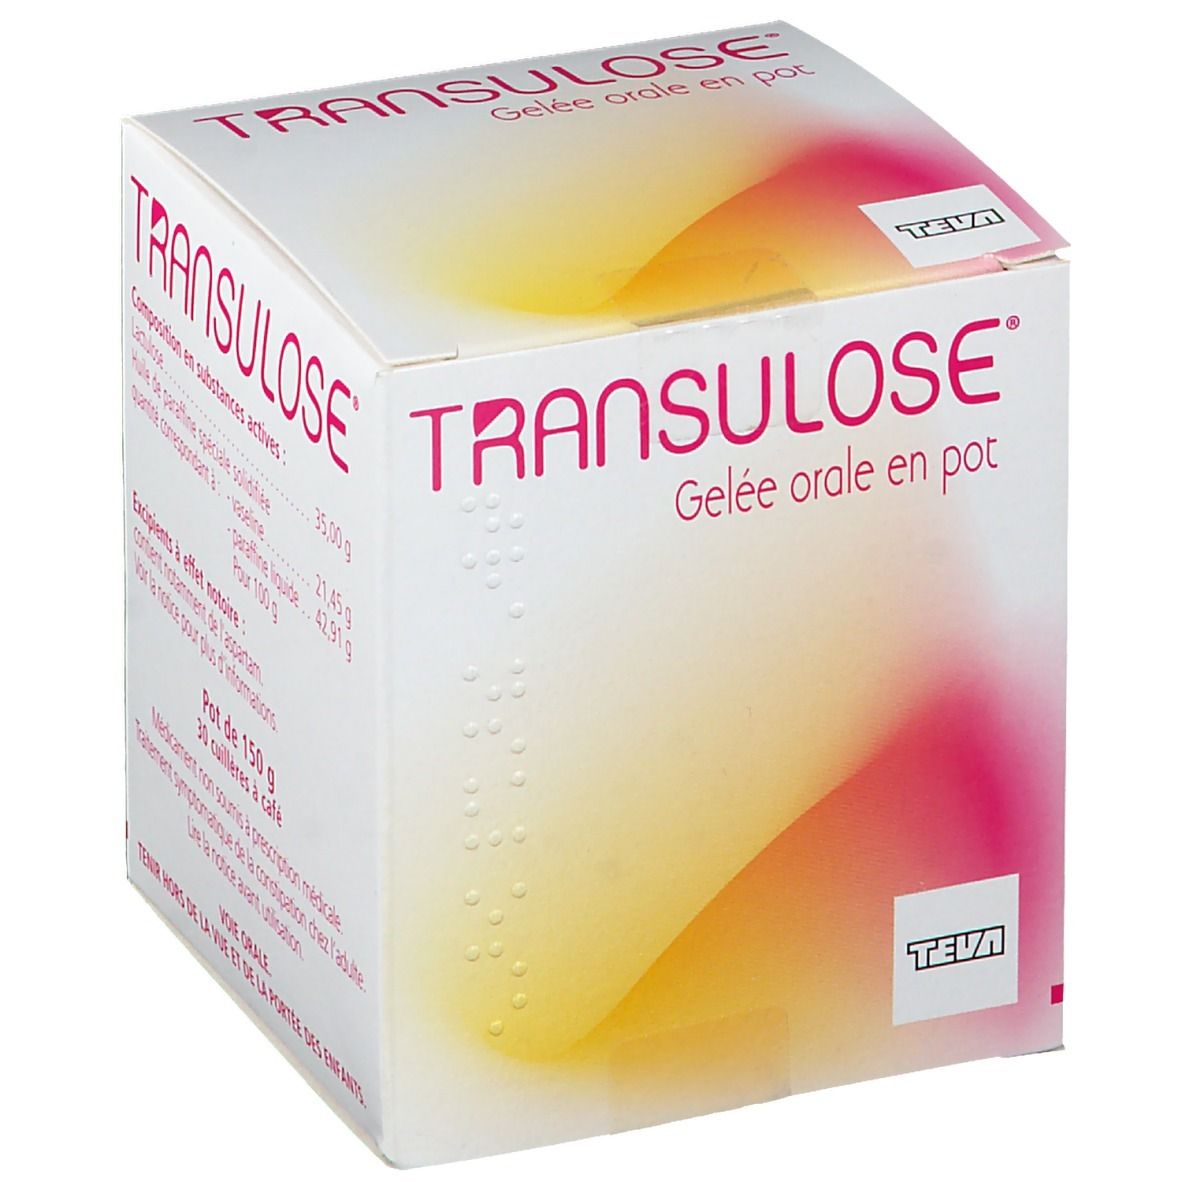 Transulose® Gelée orale